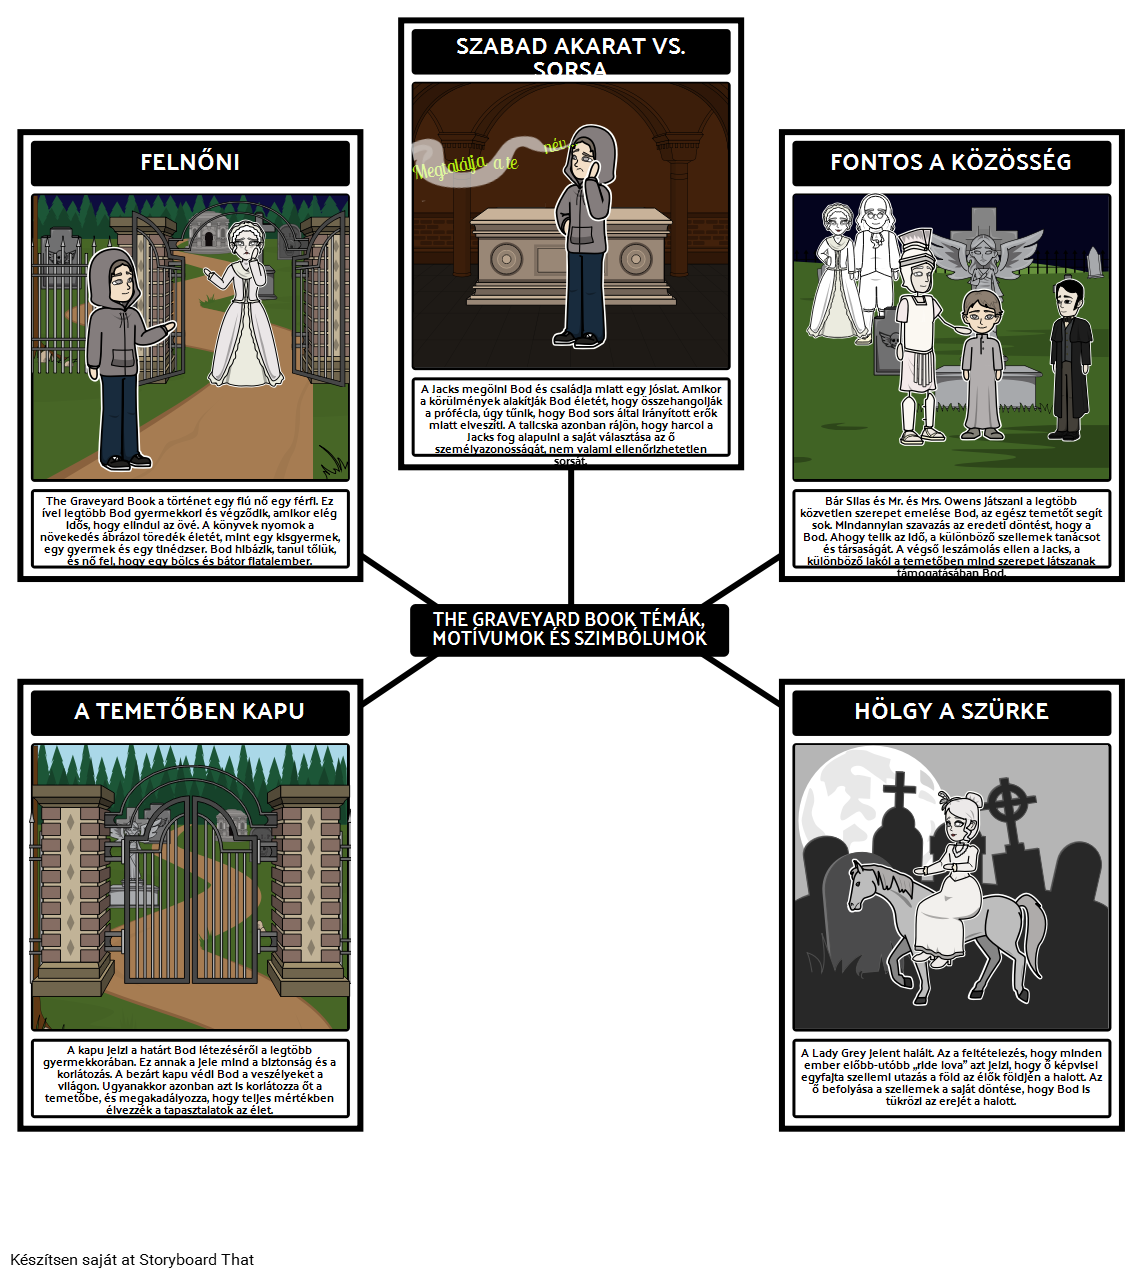 The Graveyard Book Témák, Motívumok és Szimbólumok